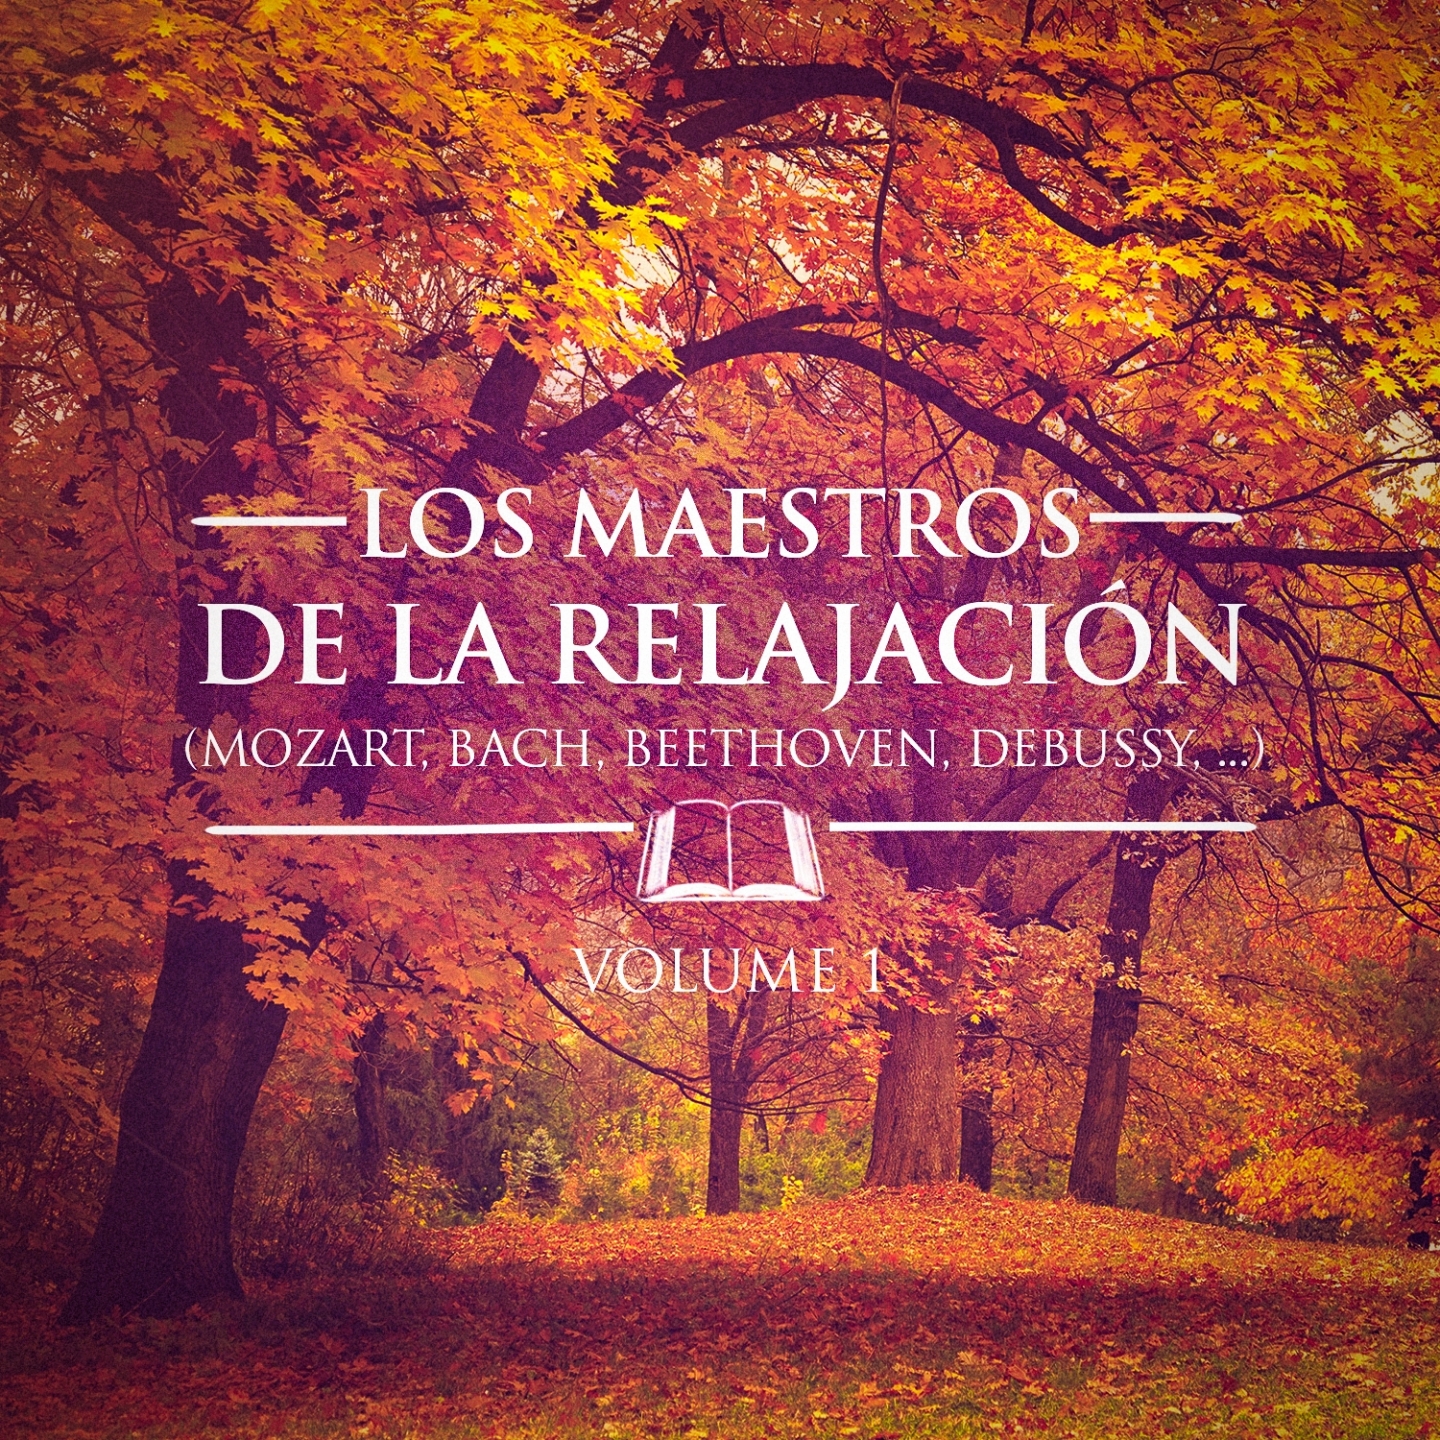 Los Maestros de la Relajacio n, Vol. 1 Debussy, Satie, Bach, Mozart, Chaikovski y Beethoven